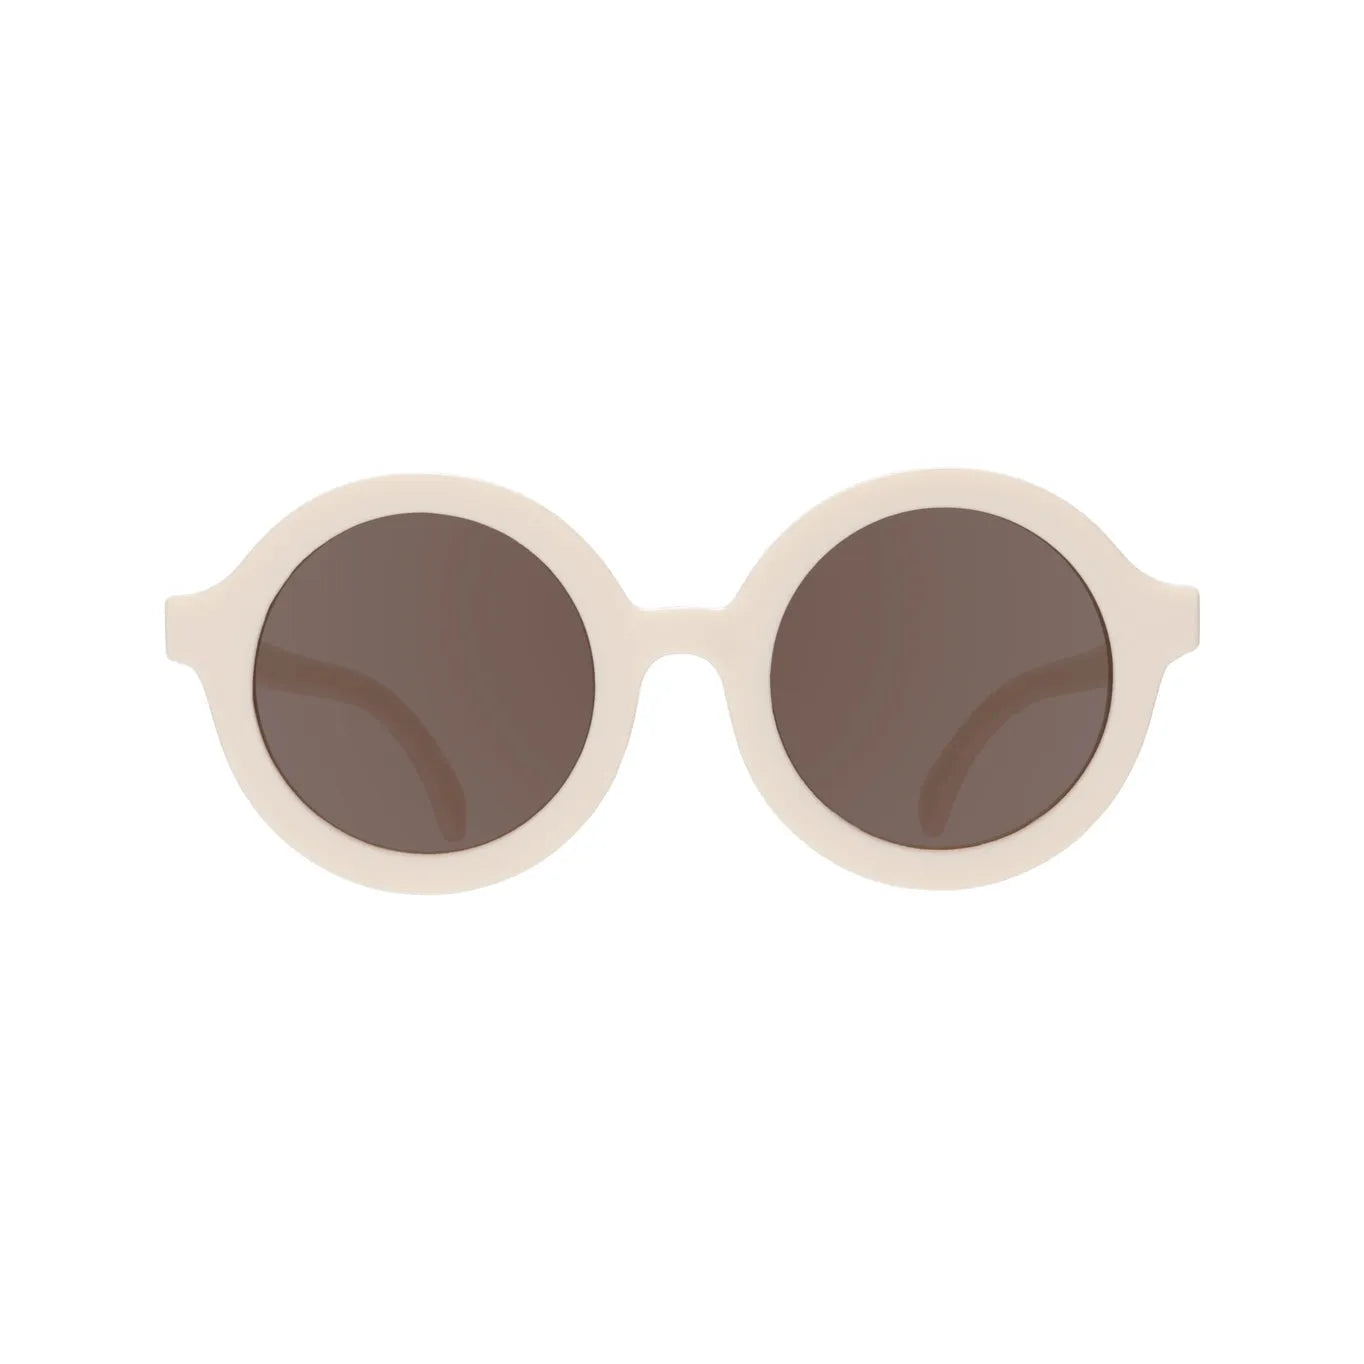 Sunglasses - Sweet Cream Euro Round